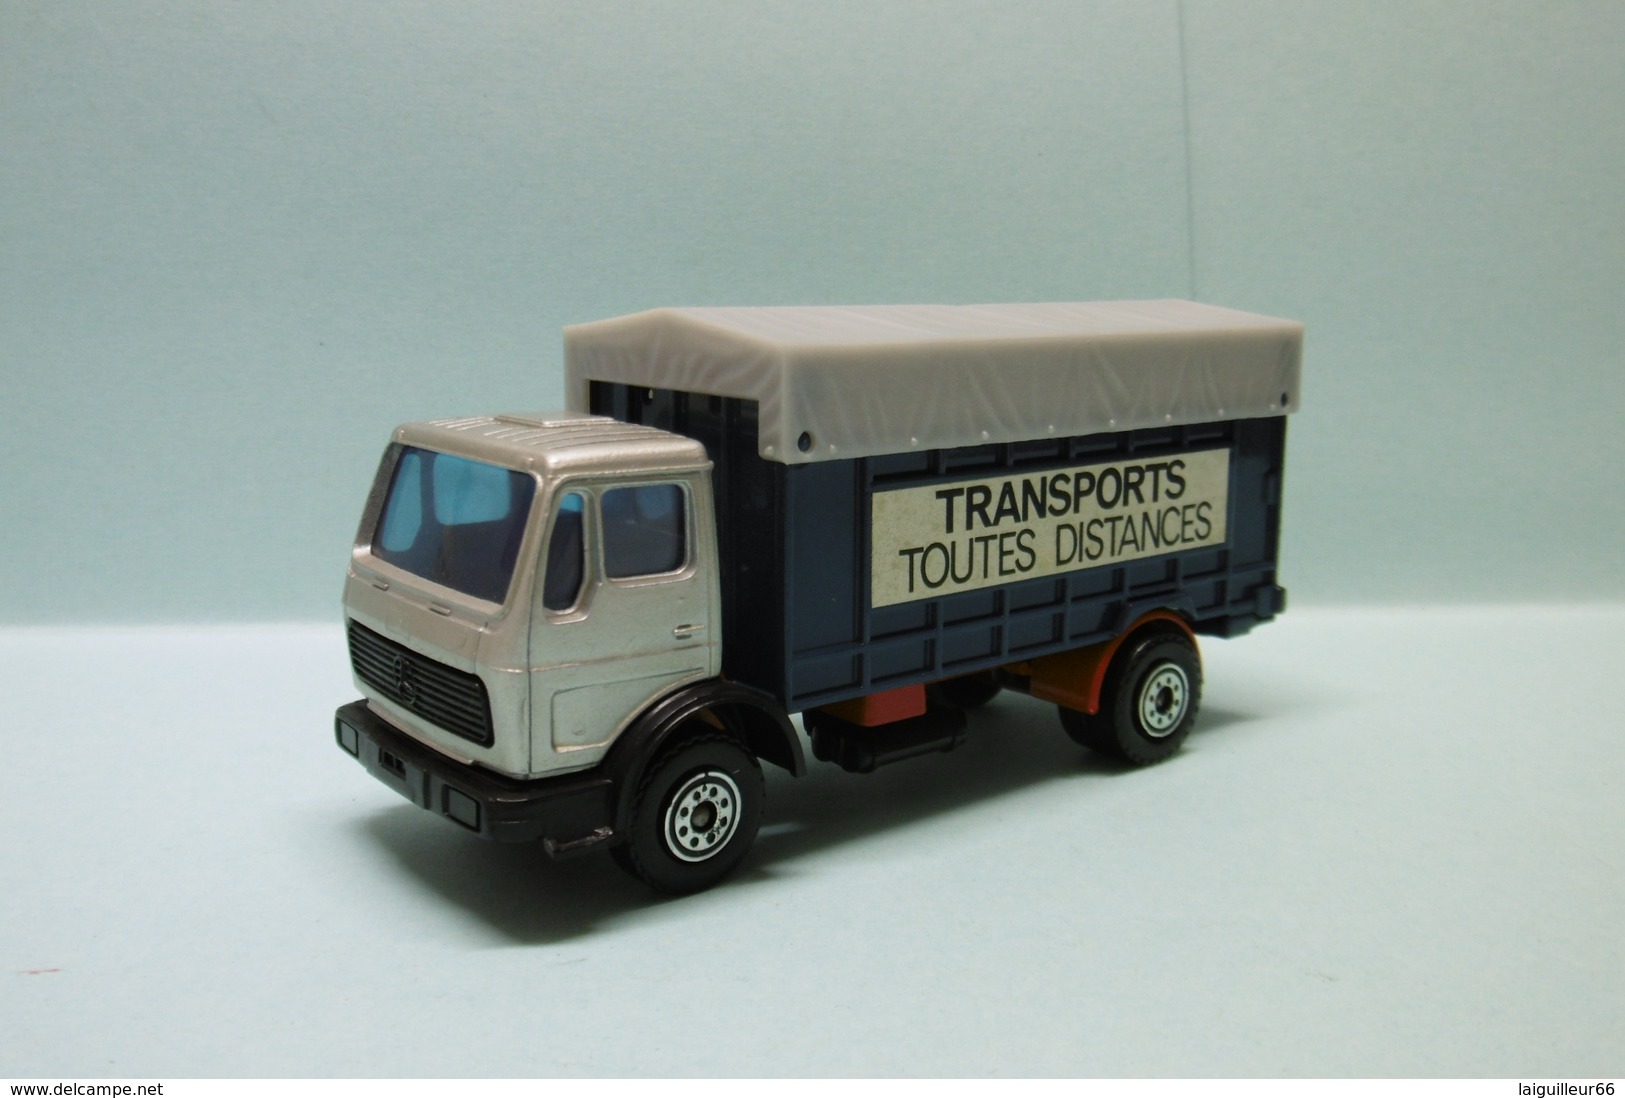 Solido - CAMION BACHE MERCEDES 1217 K/32 Transports Toutes Distances Réf. 384 1/55 - Trucks, Buses & Construction